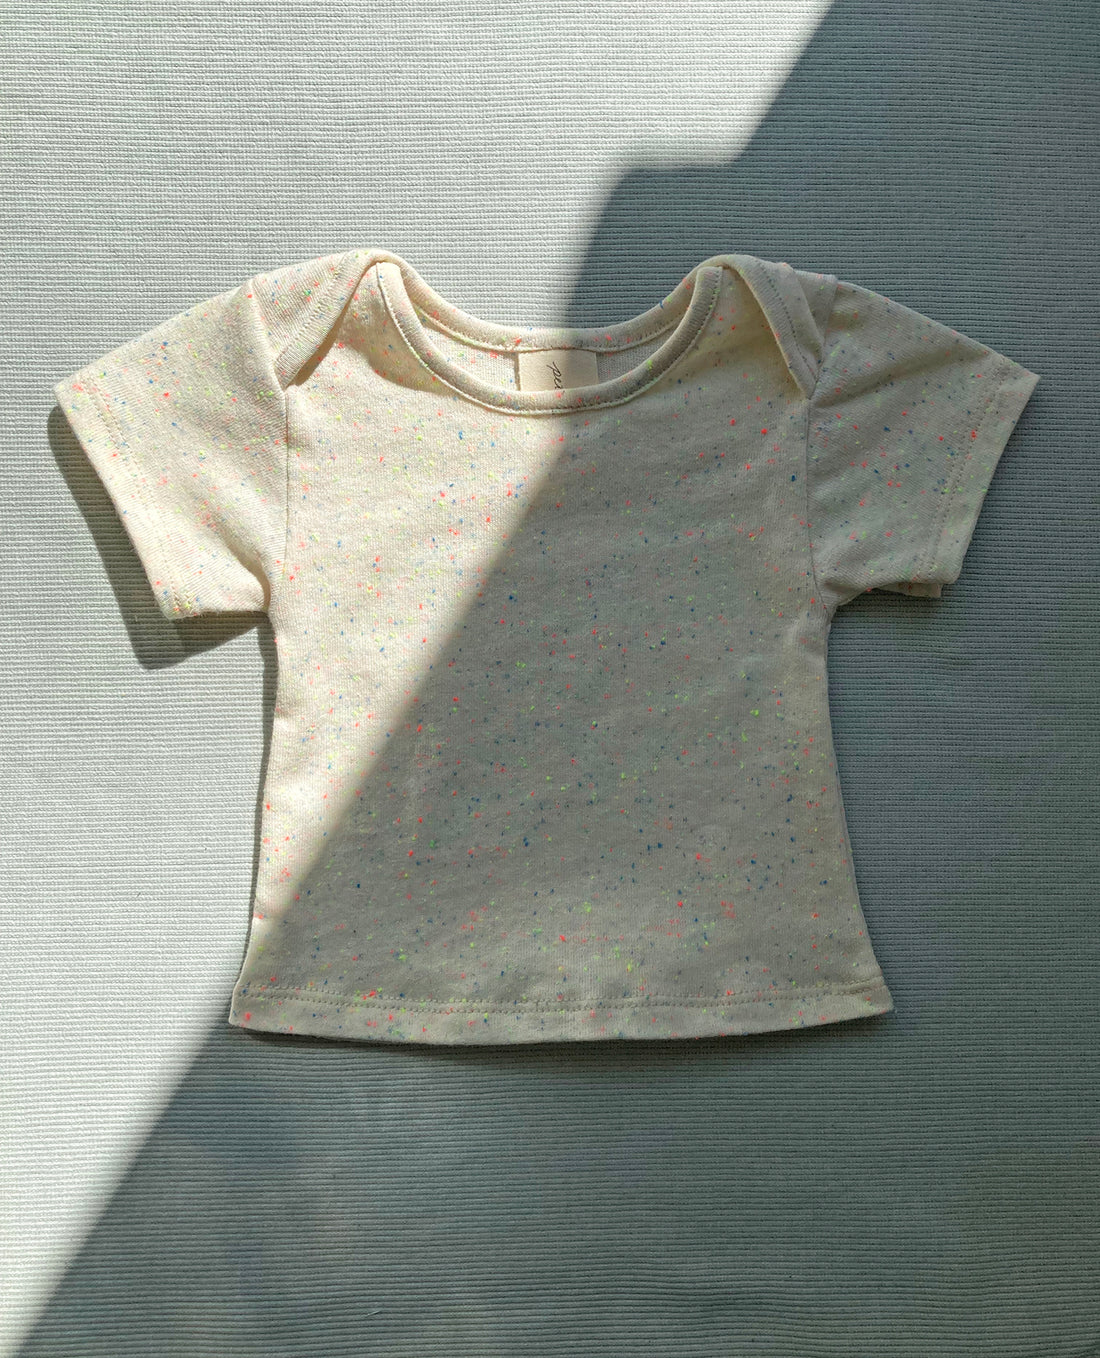 T-shirt pour bébé No2236b, confettis fluo